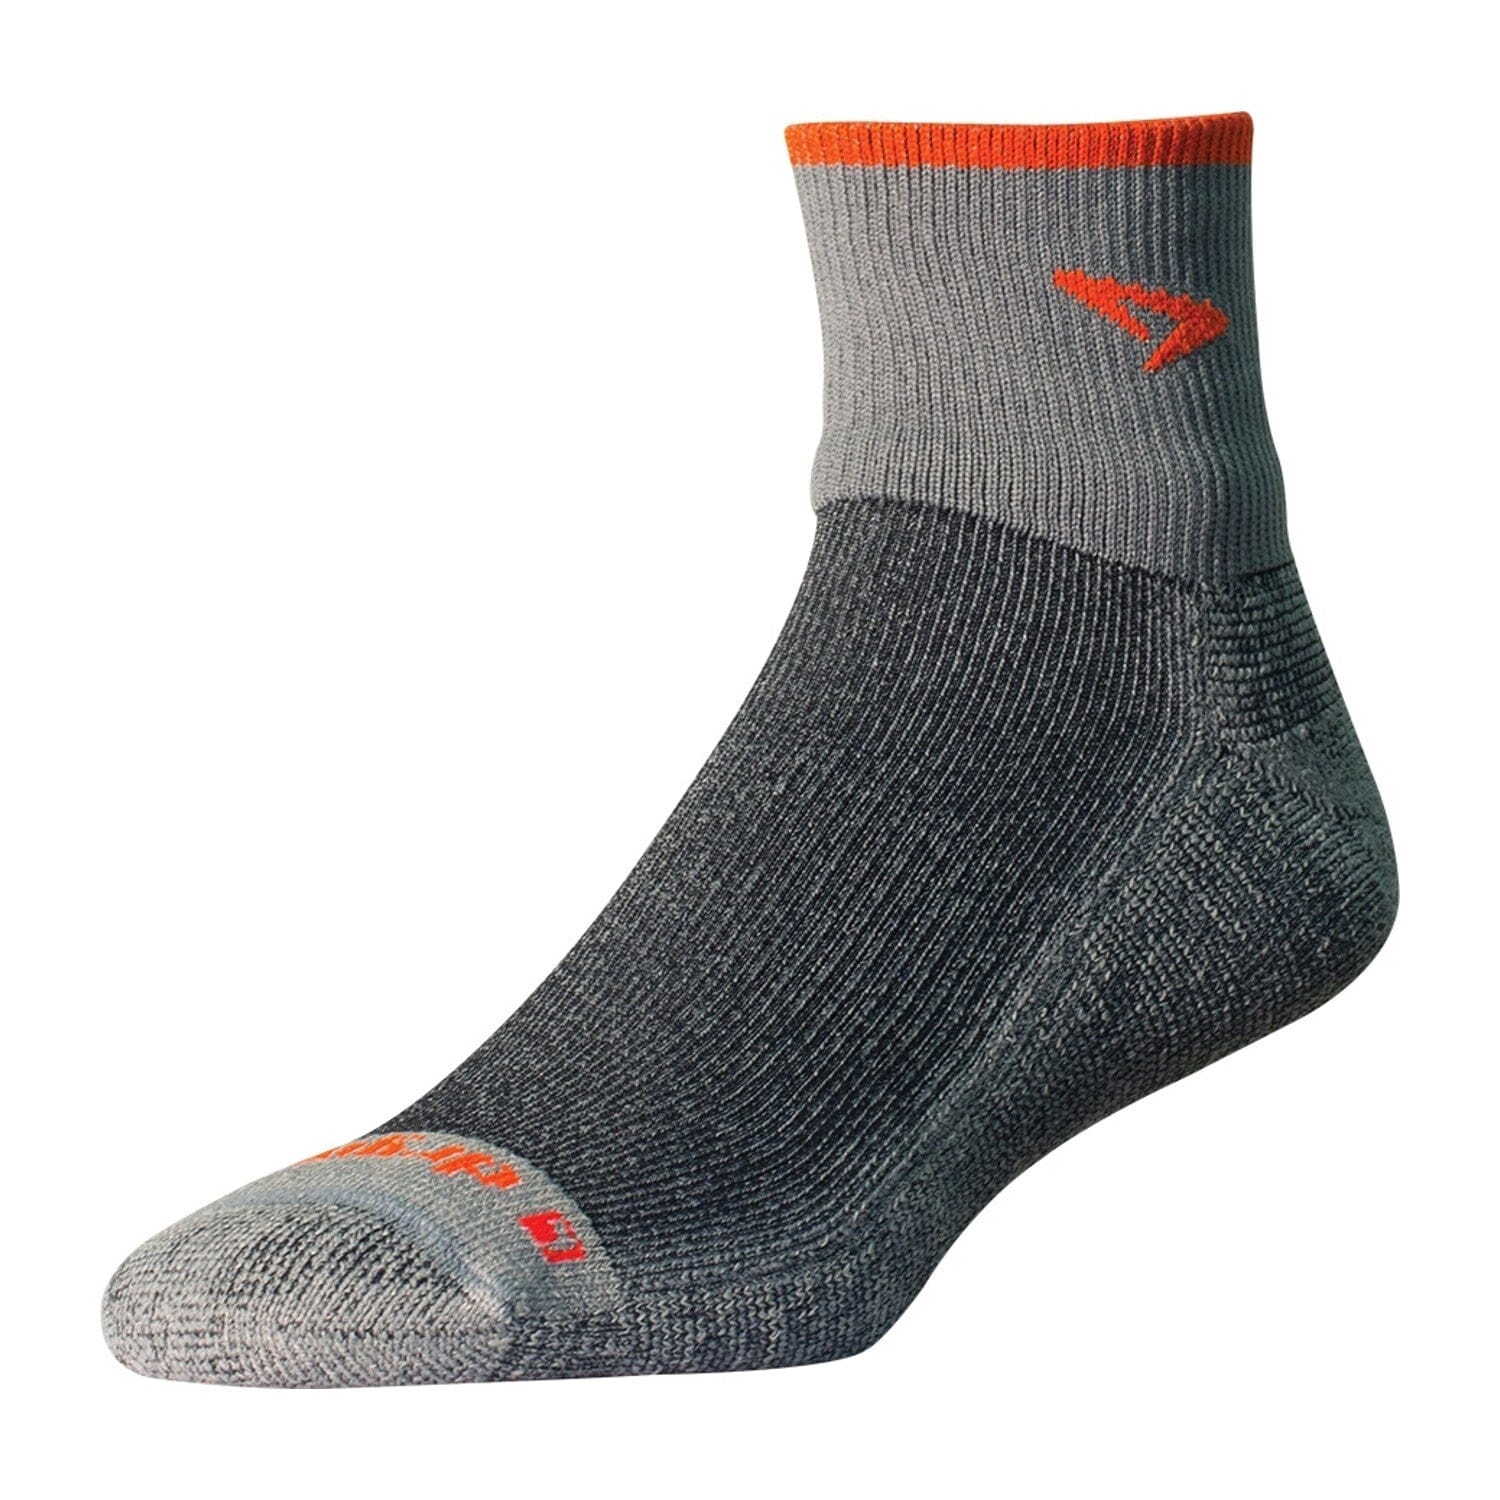 Drymax Max. Pro Trail Run 1/4 Crew Socks Gray/Orange L 